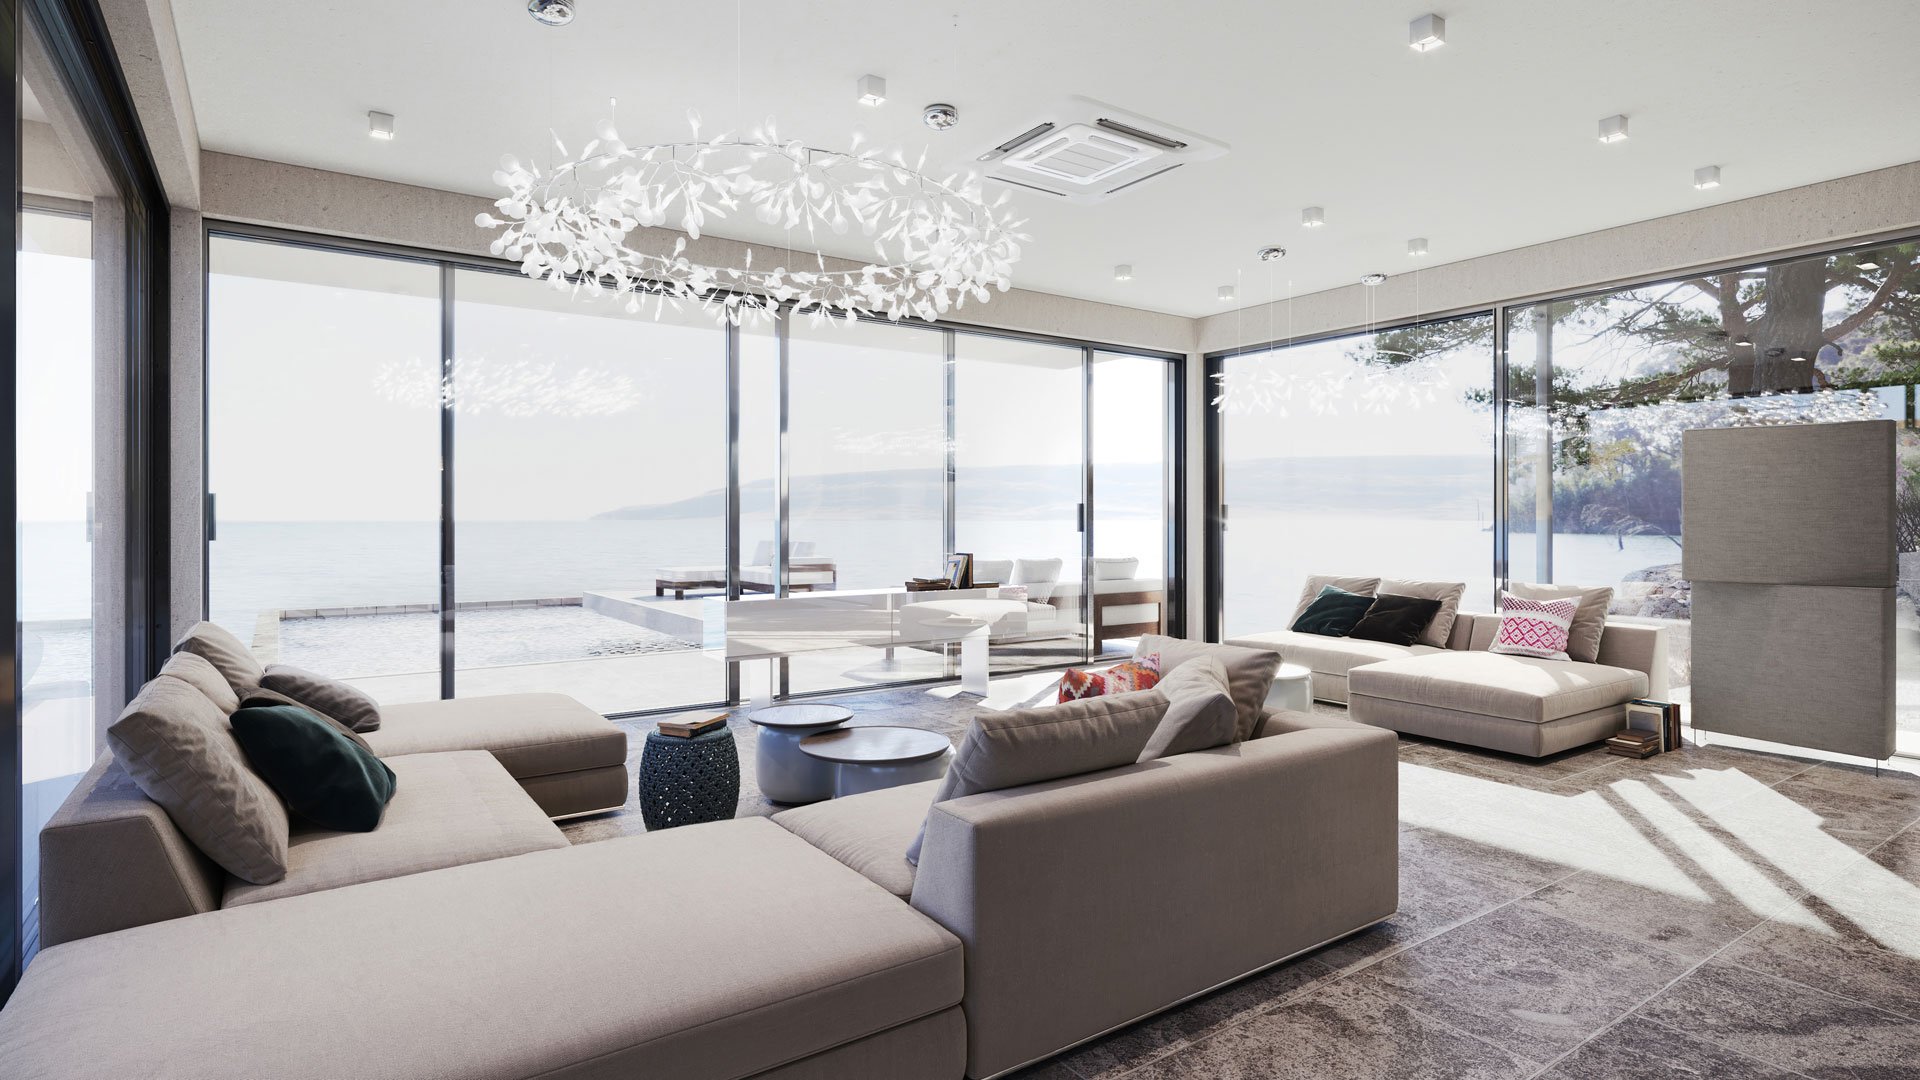 CG Image of a Living Room for an Interior Design Portfolio